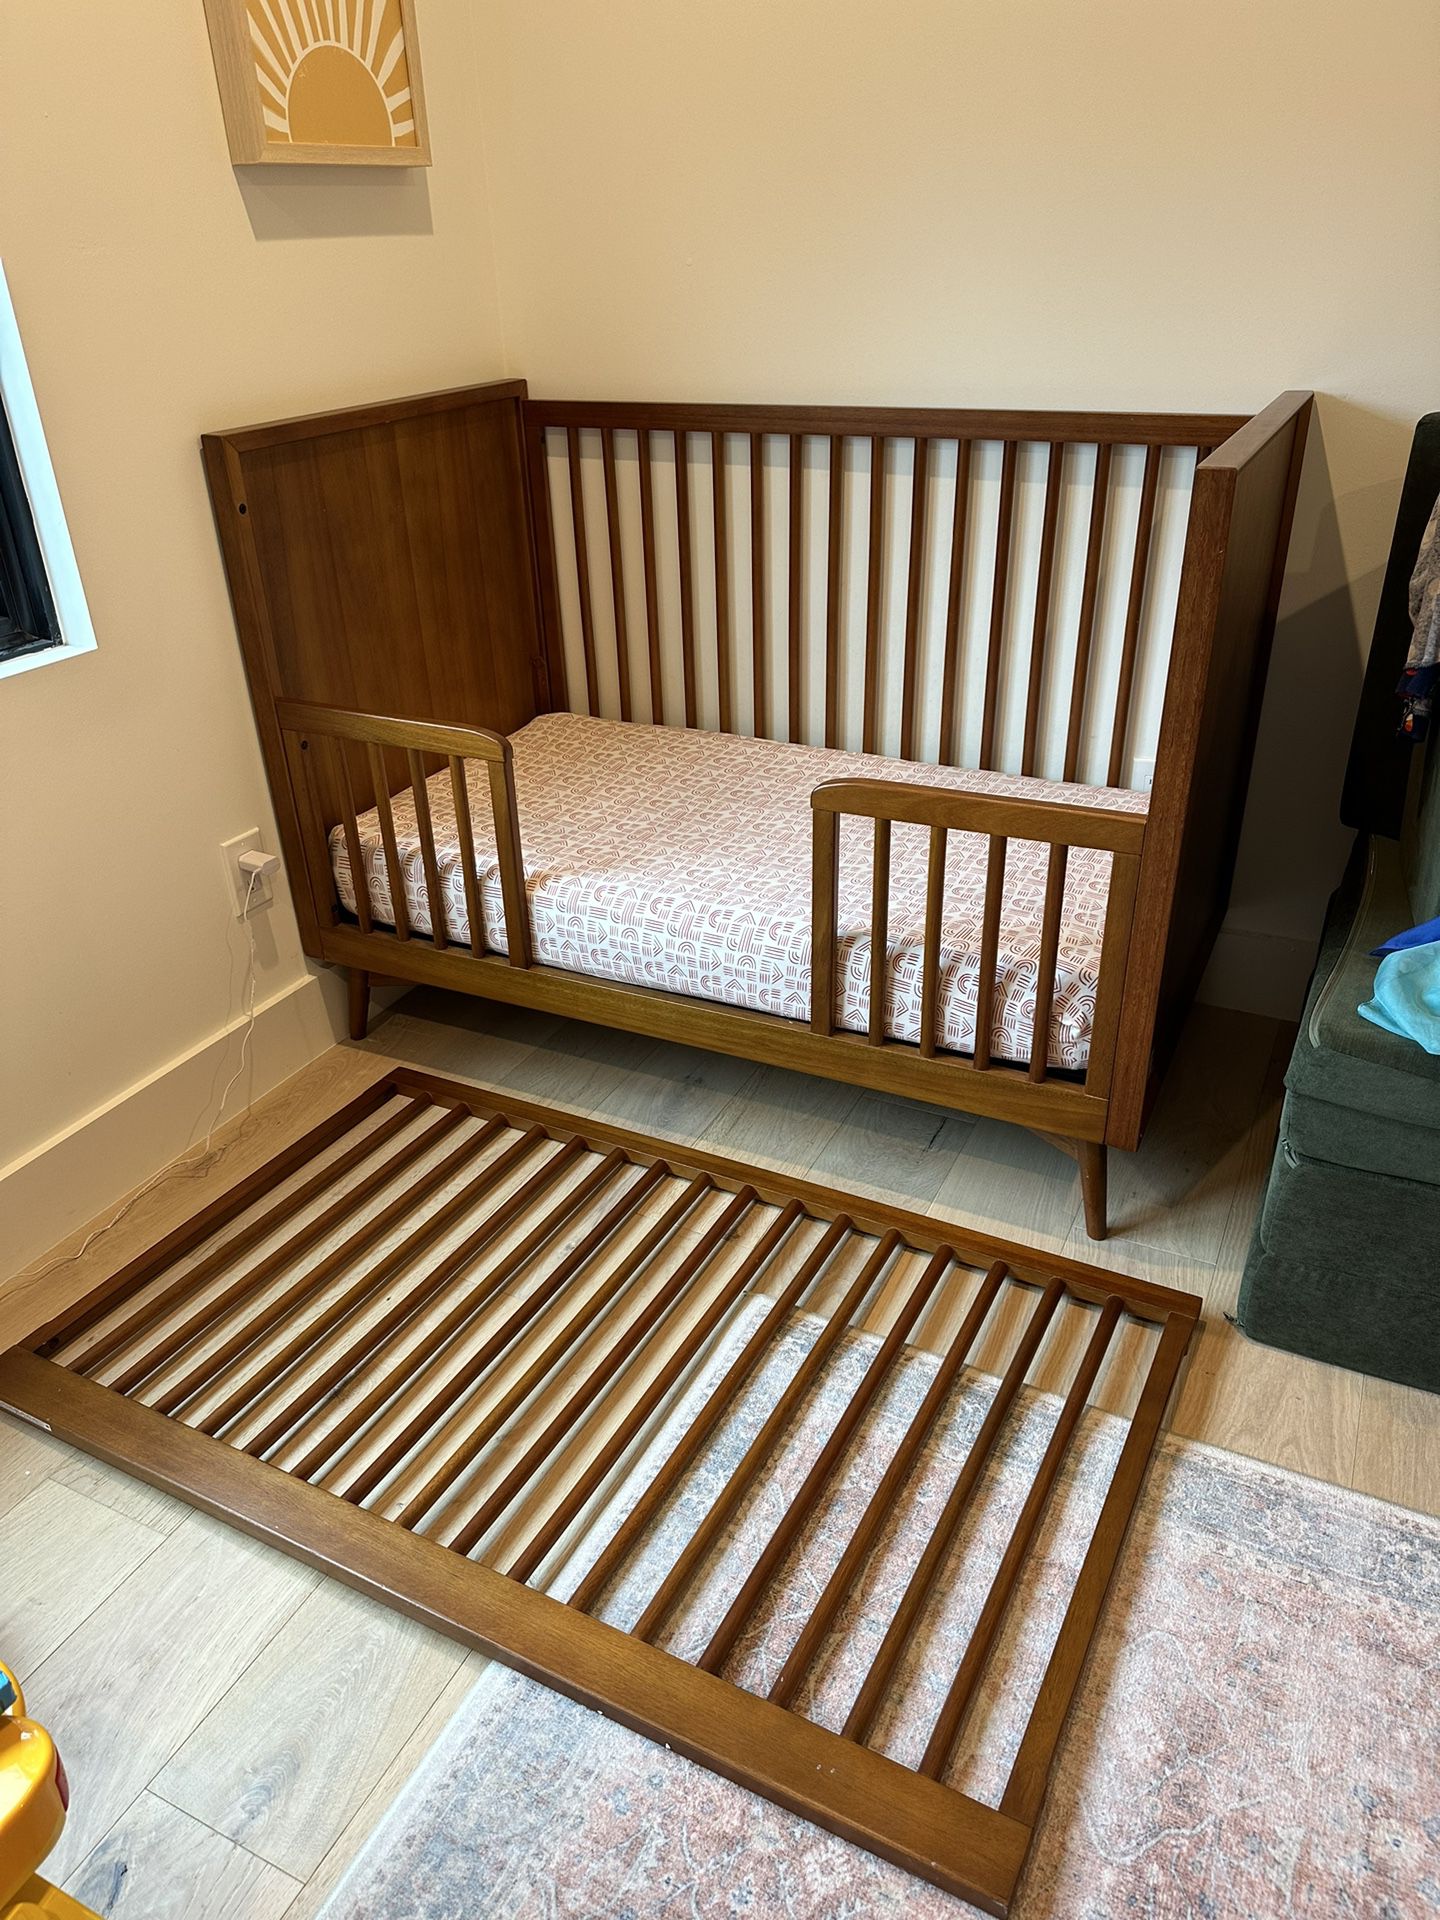 West Elm Crib + Toddler Bed Converter 